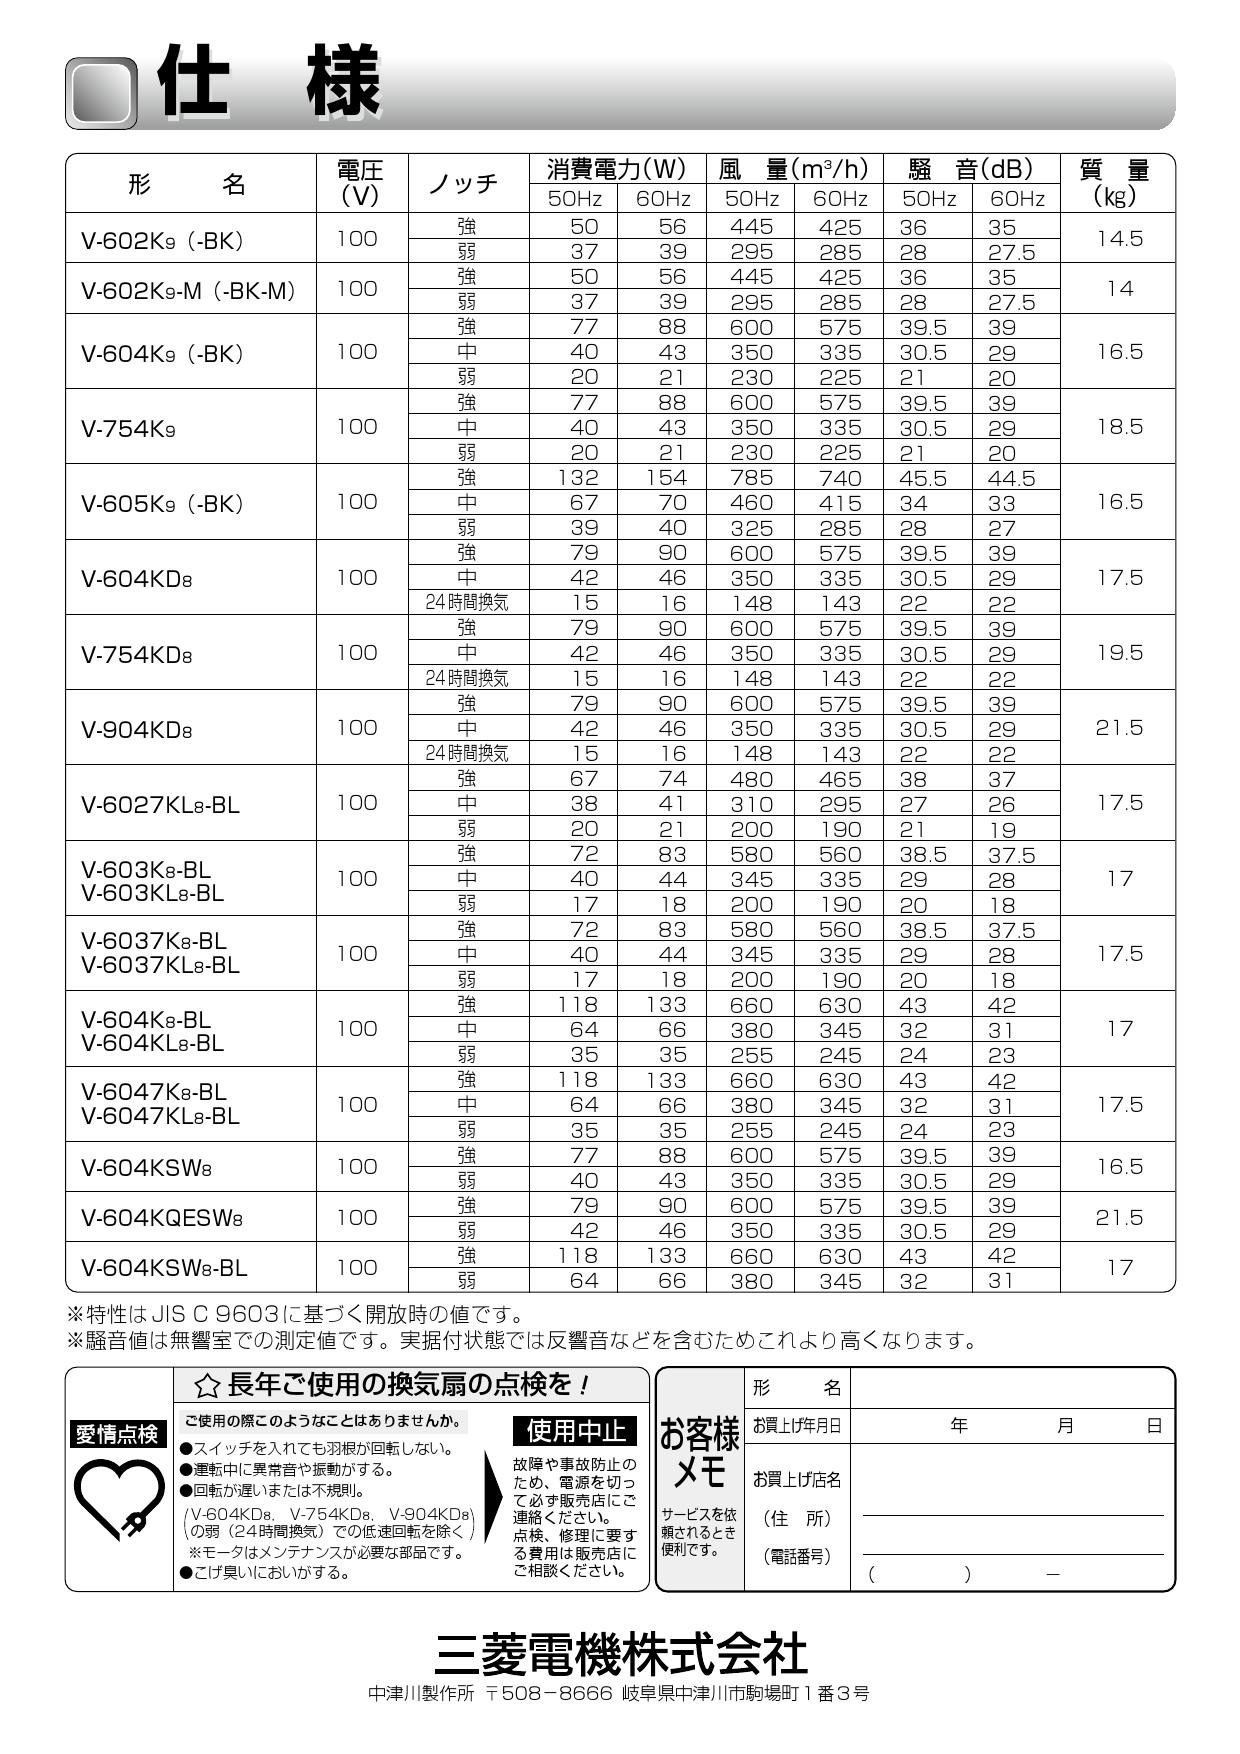 三菱 MITSUBISHI】 三菱 V-6047KL8-BL レンジフードファン深形 標準